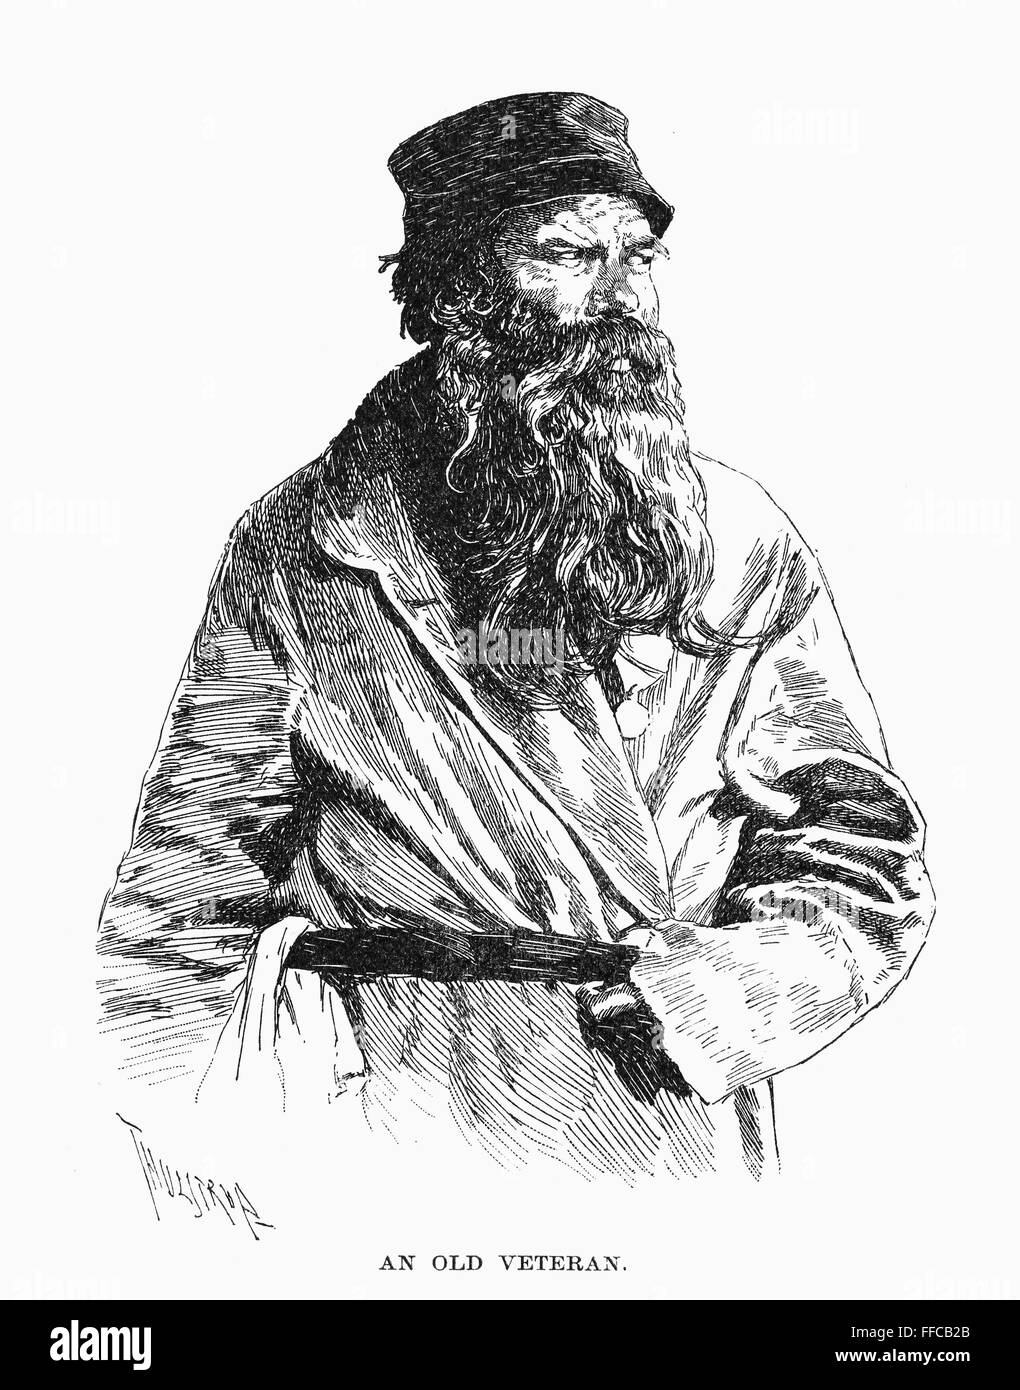 RUSSIAN VETERAN, 1890. /nAn old Russian veteran. Drawing, 1890, by Thure de Thulstrup. Stock Photo